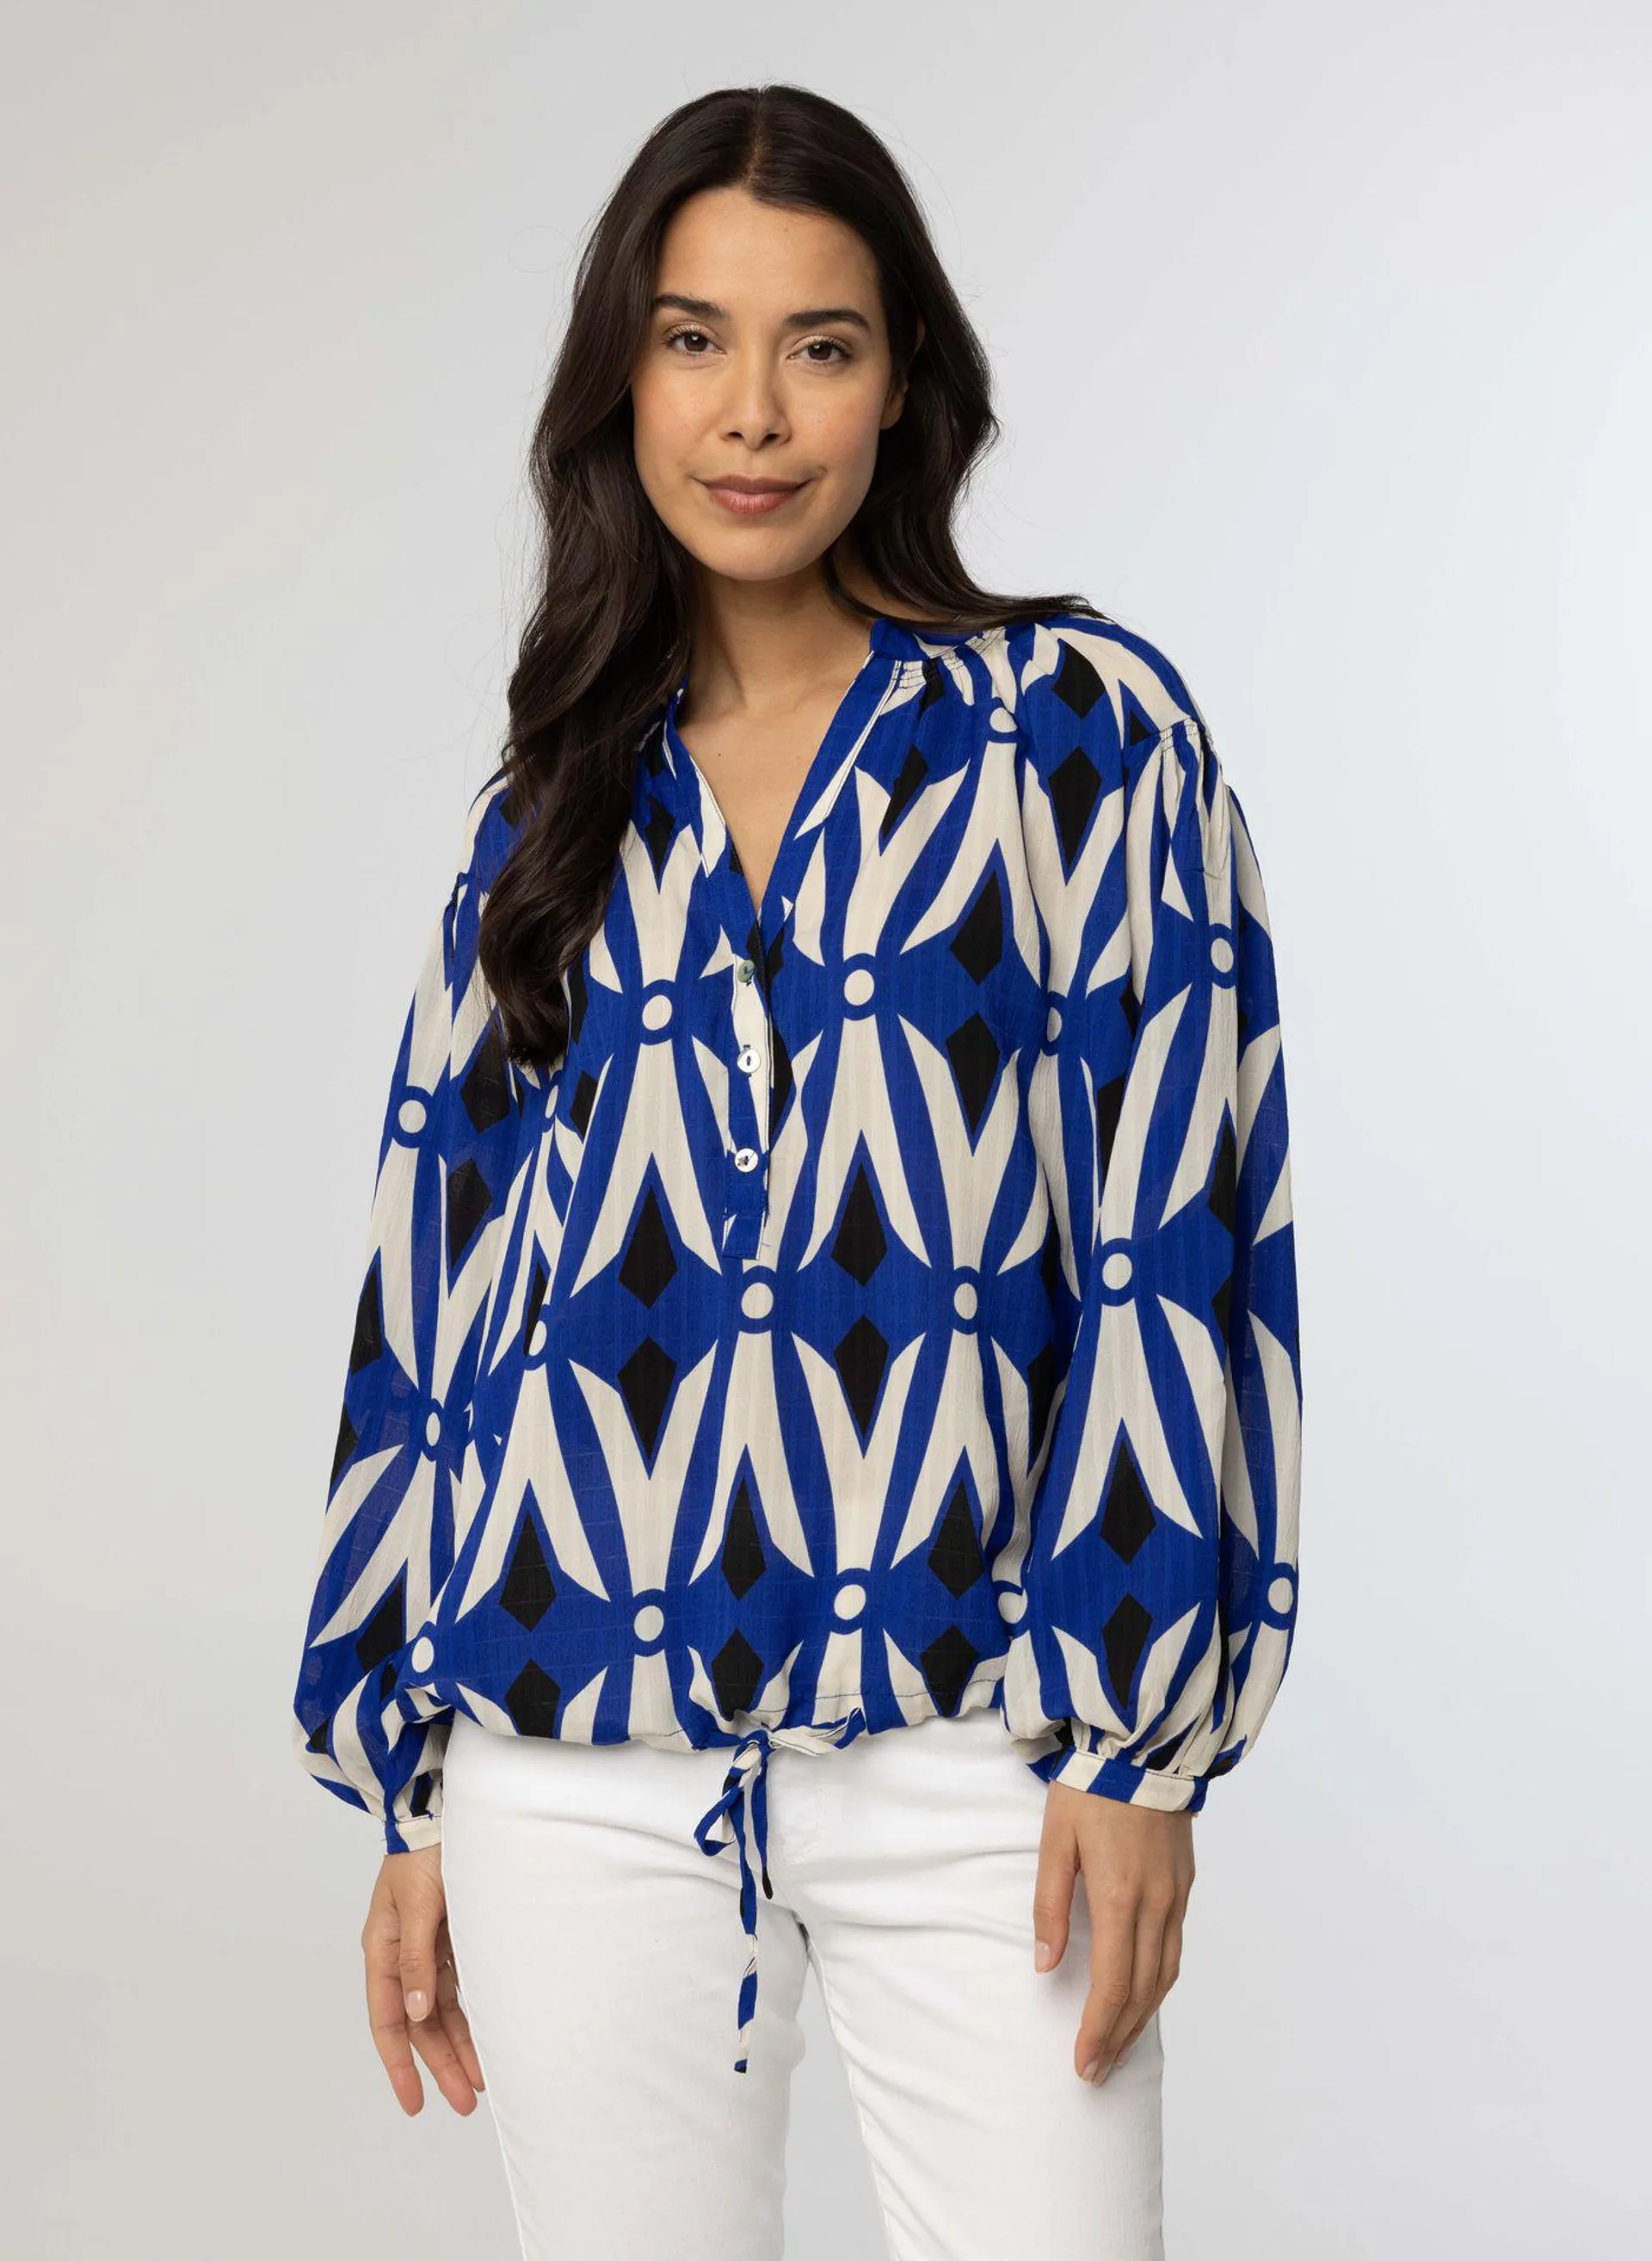 Kobaltblauwe blouse met pofmouwen